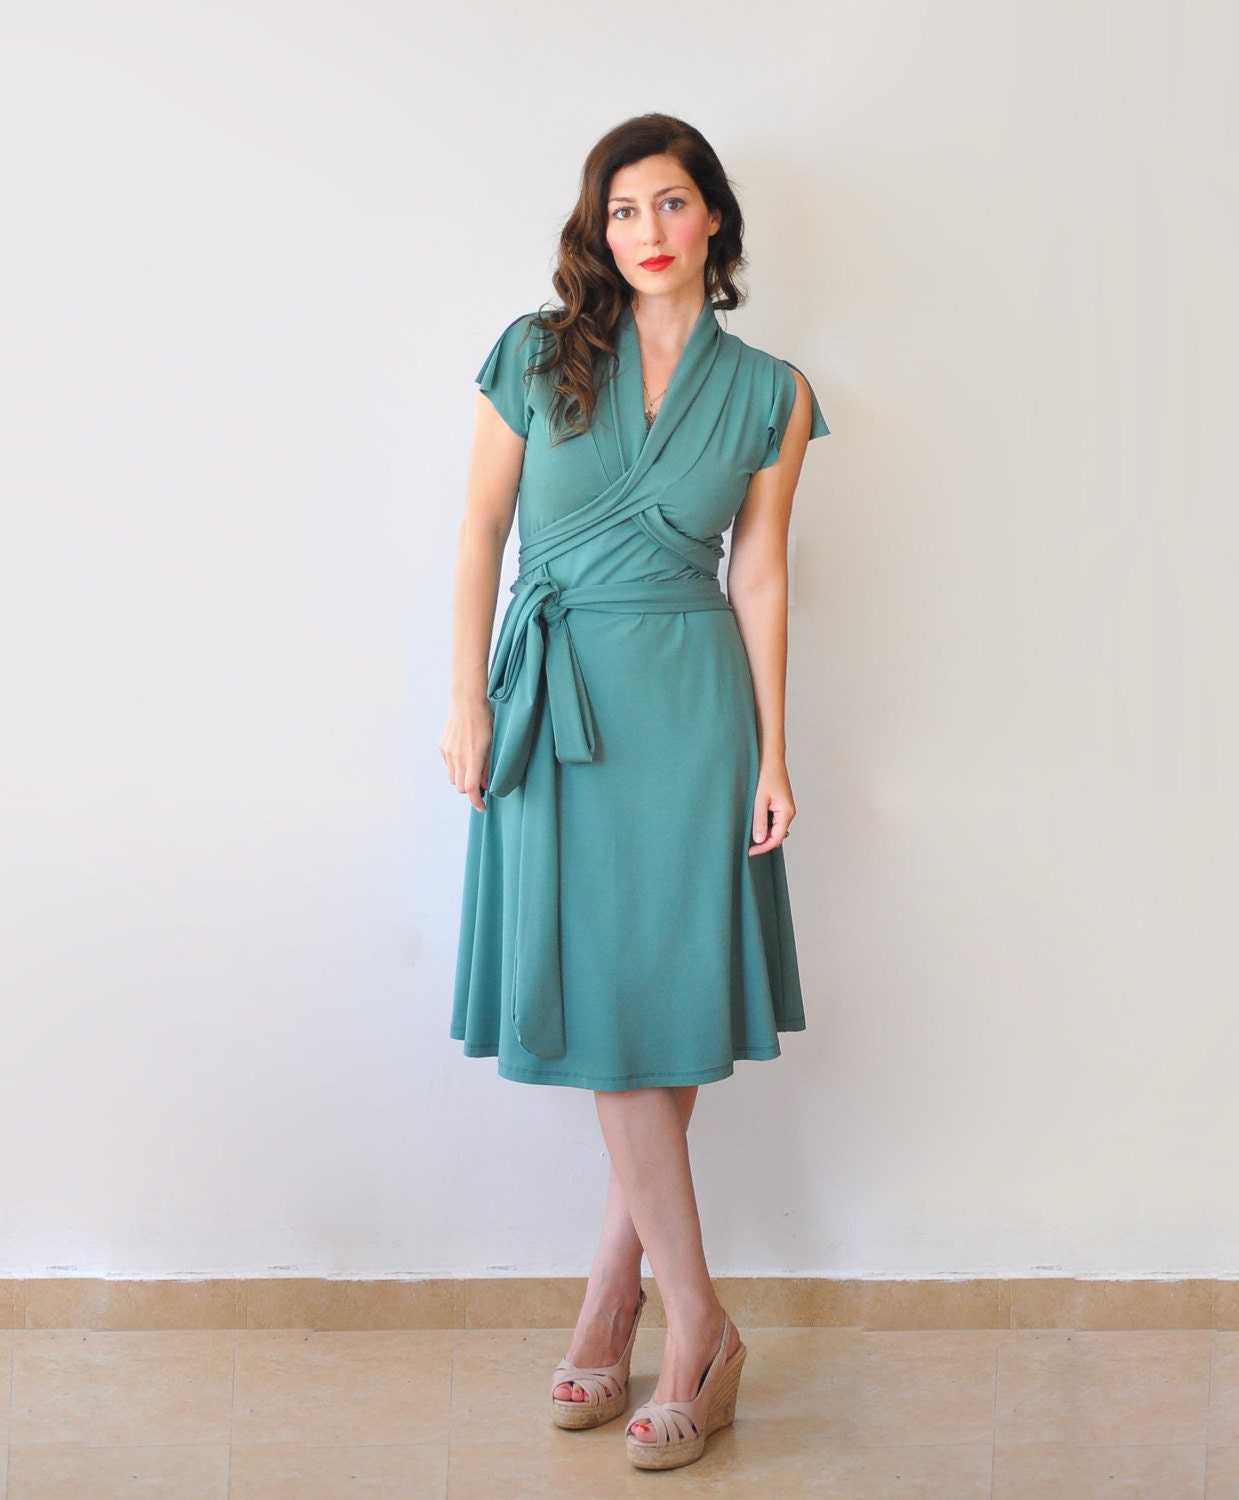 Short Sleeve Dress For Women Green Jersey Dress Summer | Etsy